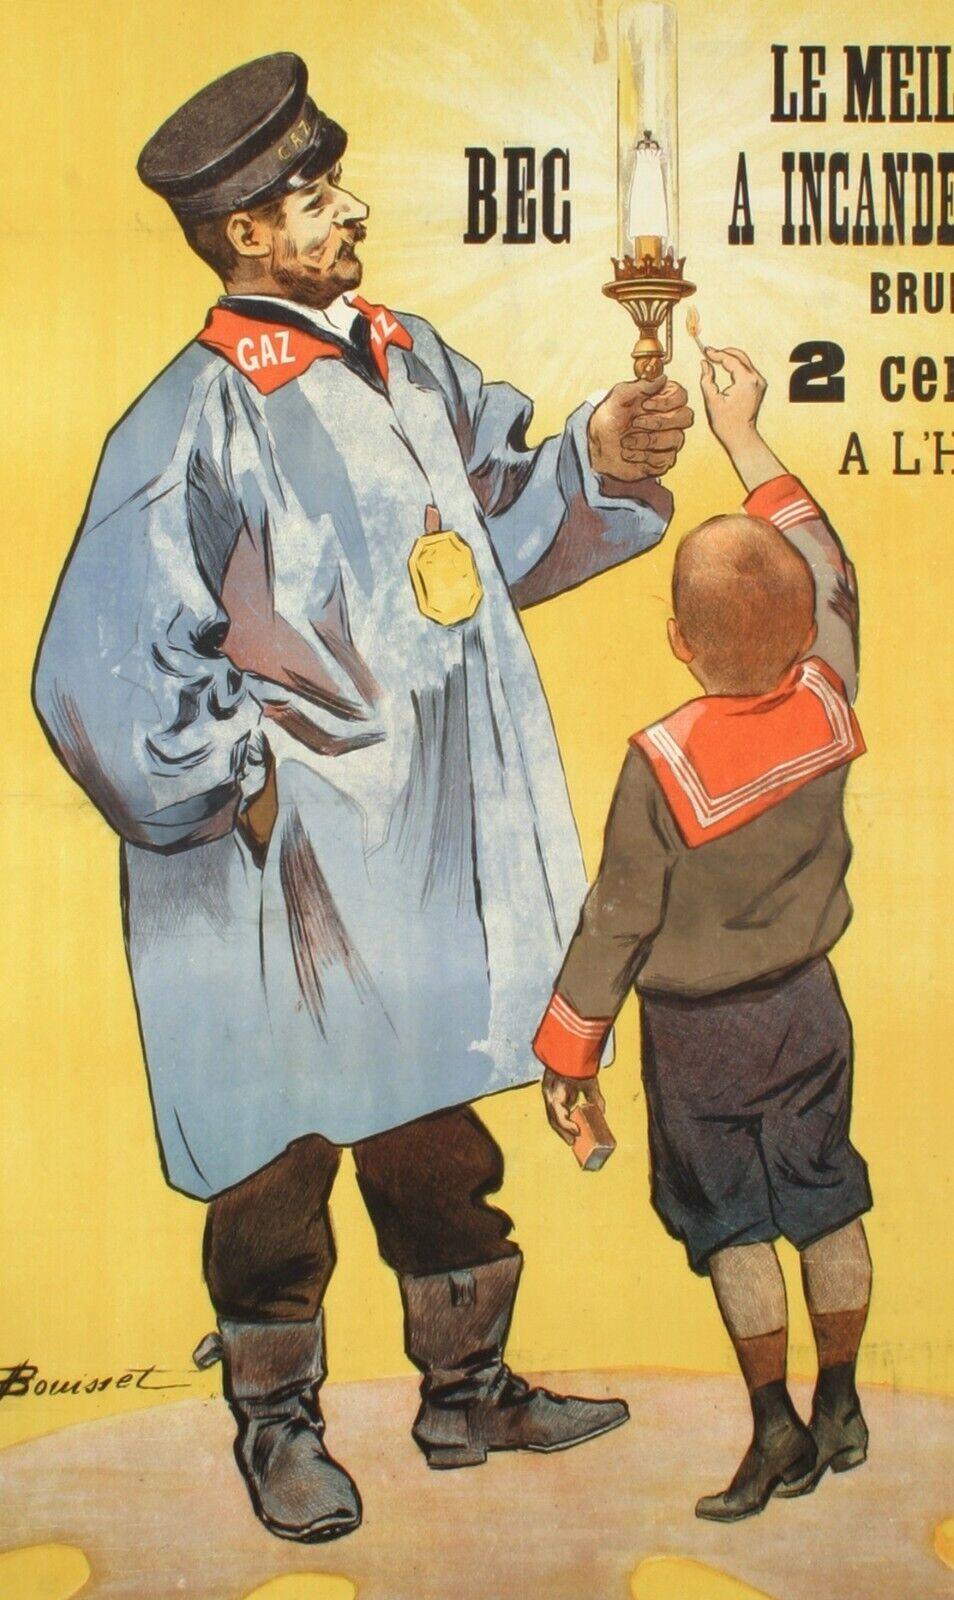 Original Vintage Poster-Firmin Bouisset-Bec Deselle-Gas-Menier, um 1900

Auf diesem Plakat wird der Bec Deselle als bester und sehr sparsamer Energieverbraucher angepriesen. Indem wir ein Kind inszenieren, das die Lampe anzündet, verstehen wir auch,